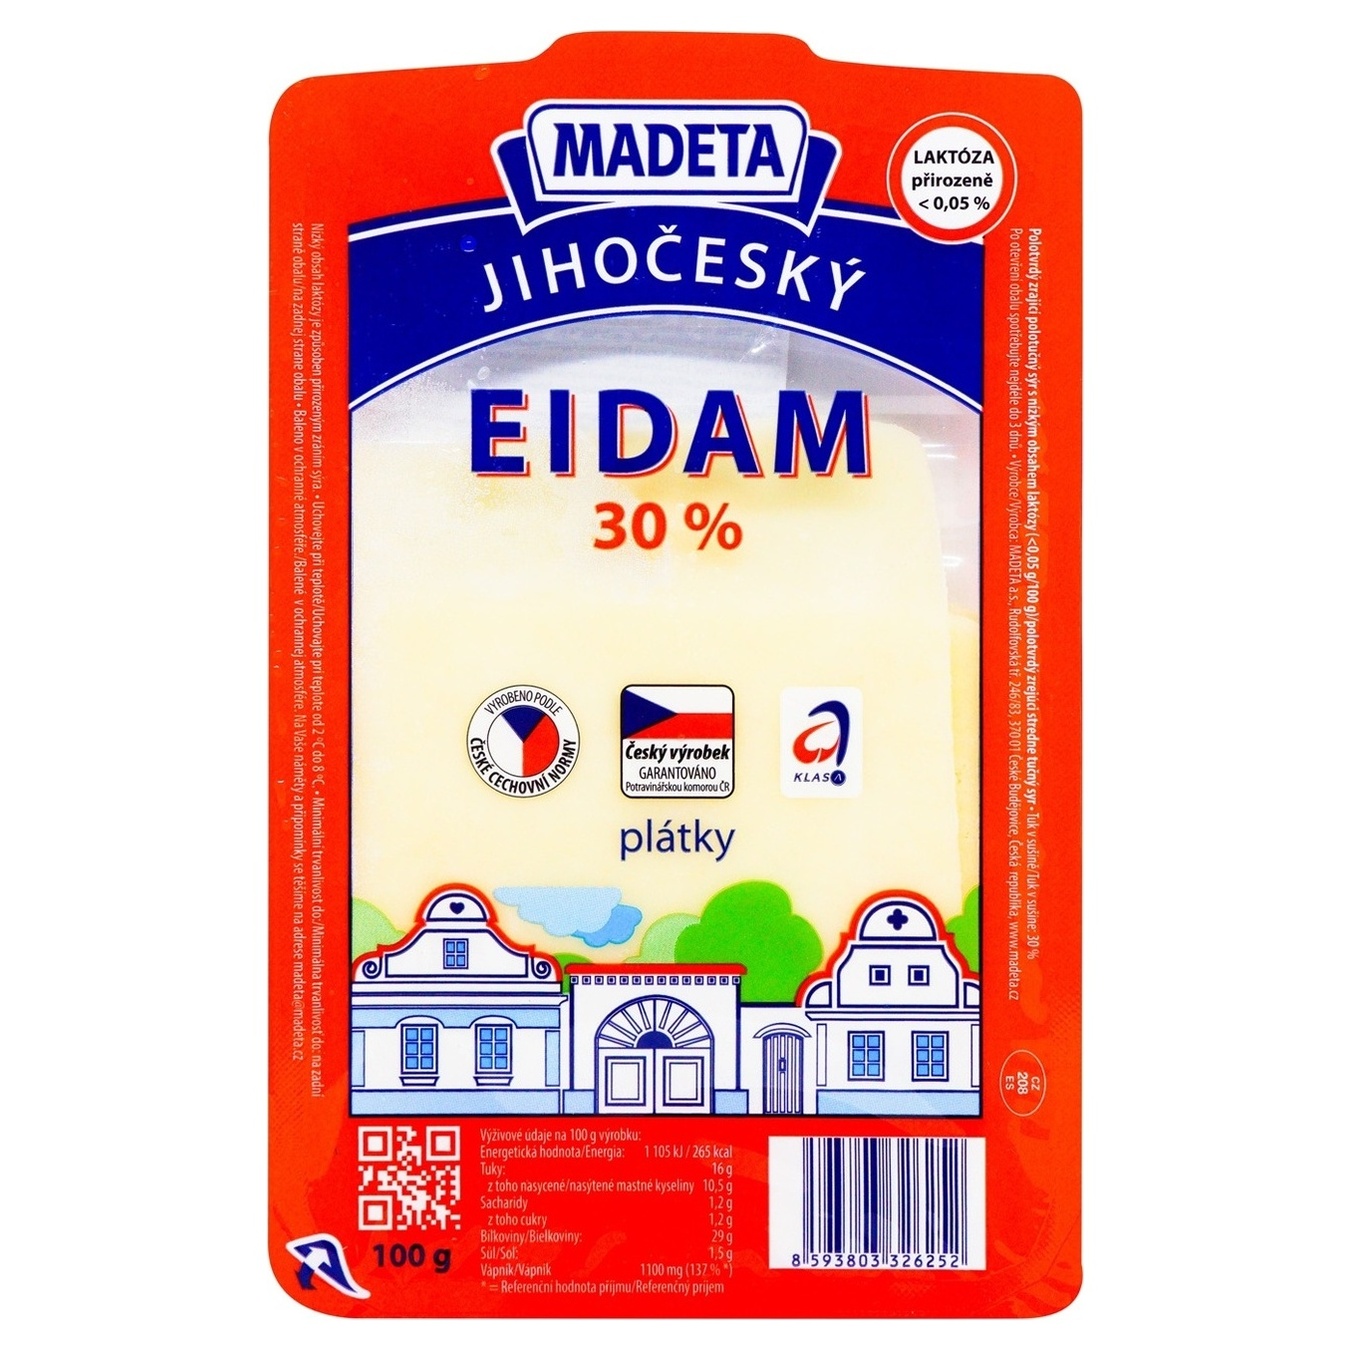 Сыр Эдам Мадета нарезанный 30% 100г